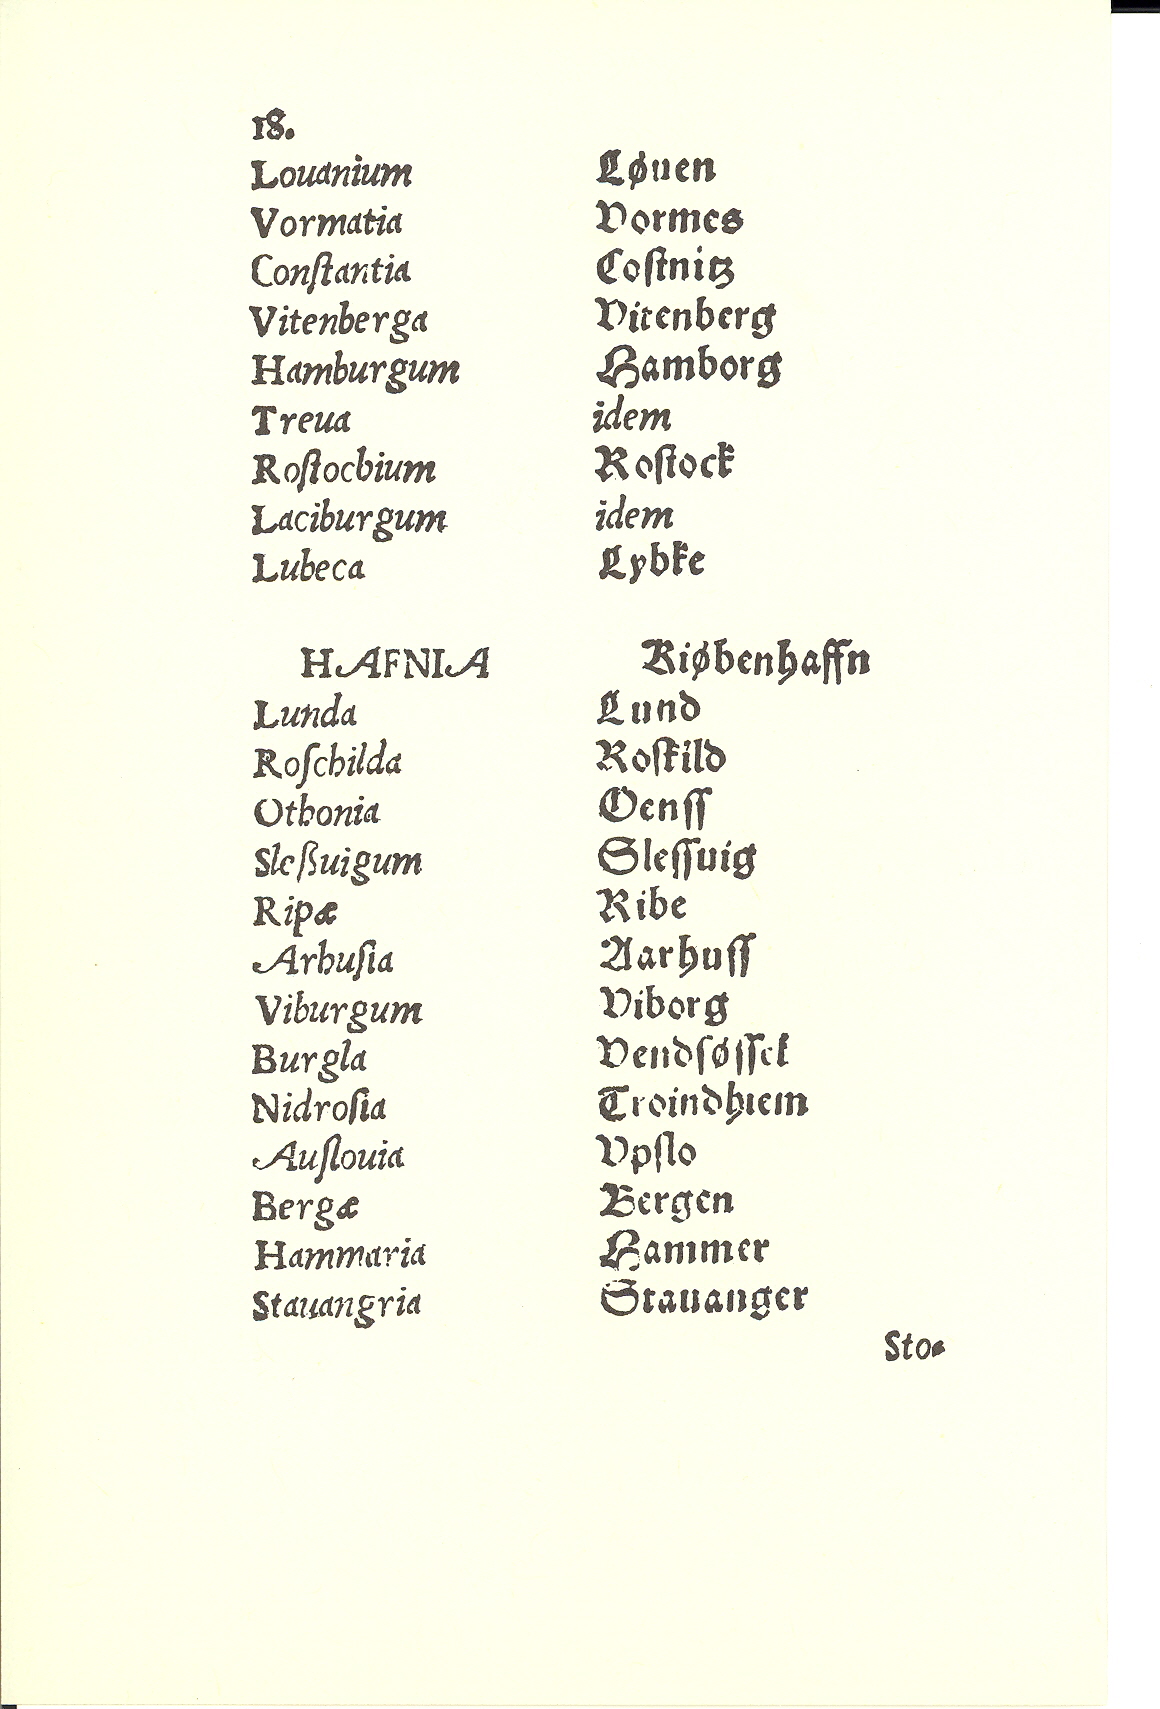 Tursen 1561, Side: 18